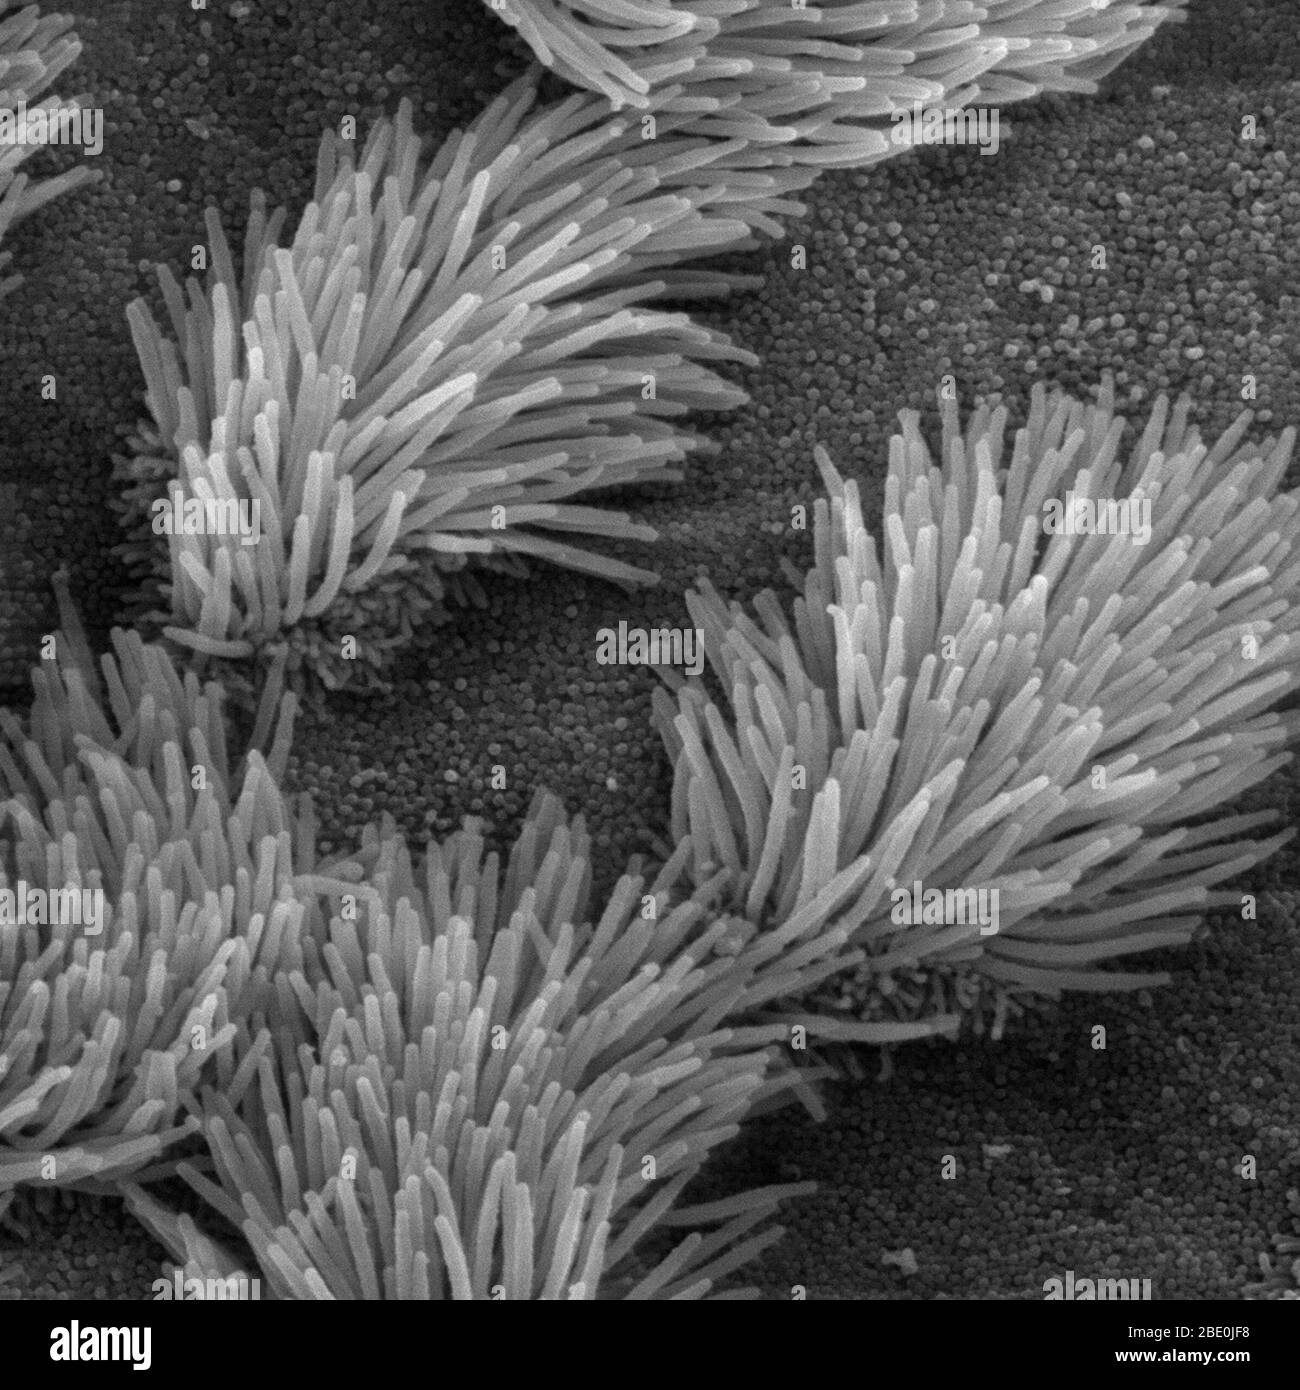 Scanning Electron Micrograph (SEM) der Lunge Luftröhre Epithel. Es gibt sowohl ciliated und nicht-ciliated Zellen in diesem Epithel. Beachten Sie den Unterschied in der Größe zwischen den Wimpern und die mikrovilli (auf die nicht-Ciliated cell Oberfläche). Vergrößerung: 5000x. Stockfoto